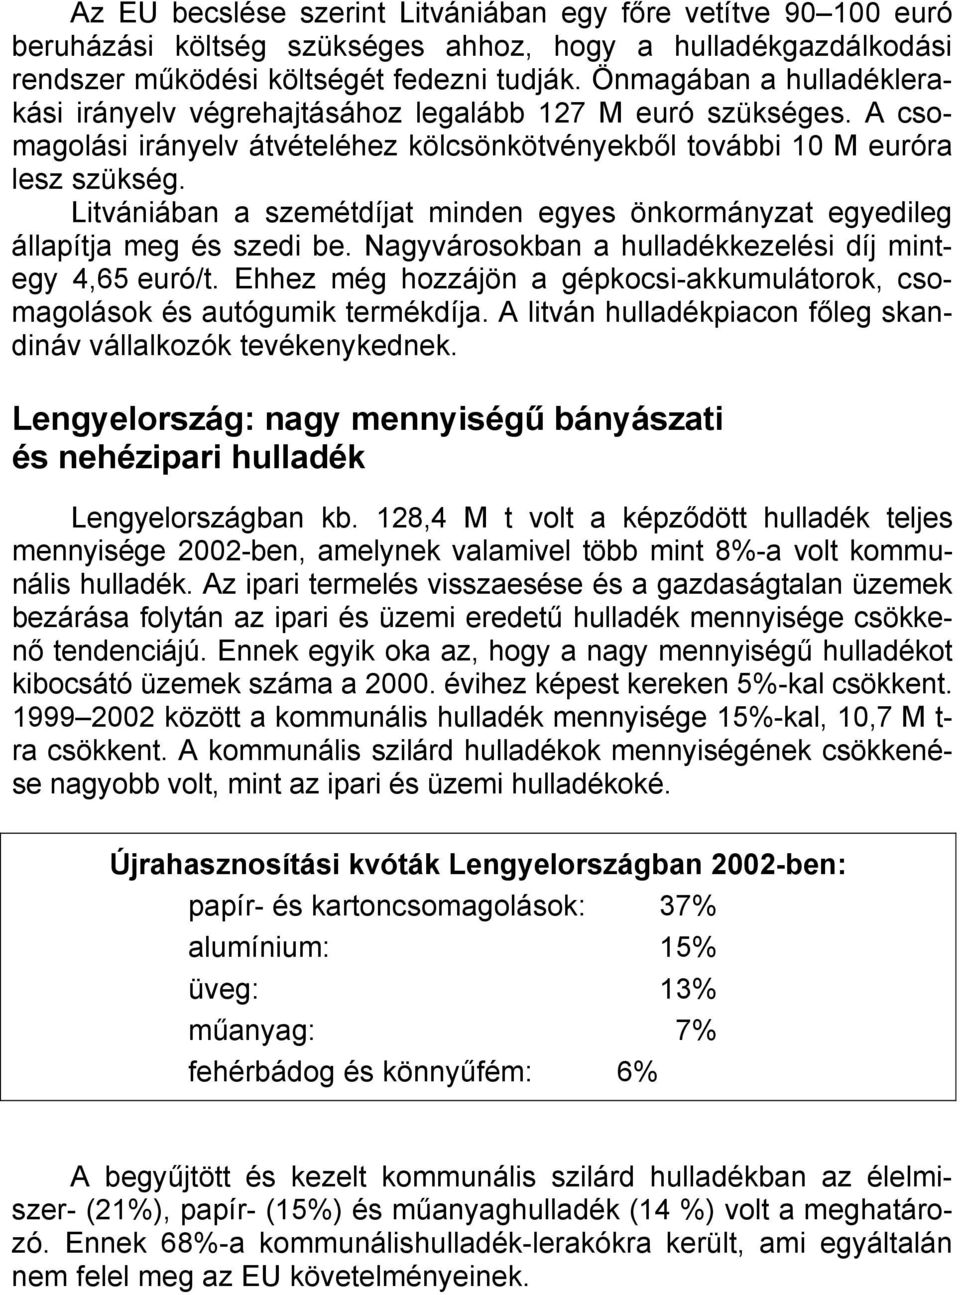 Litvániában a szemétdíjat minden egyes önkormányzat egyedileg állapítja meg és szedi be. Nagyvárosokban a hulladékkezelési díj mintegy 4,65 euró/t.